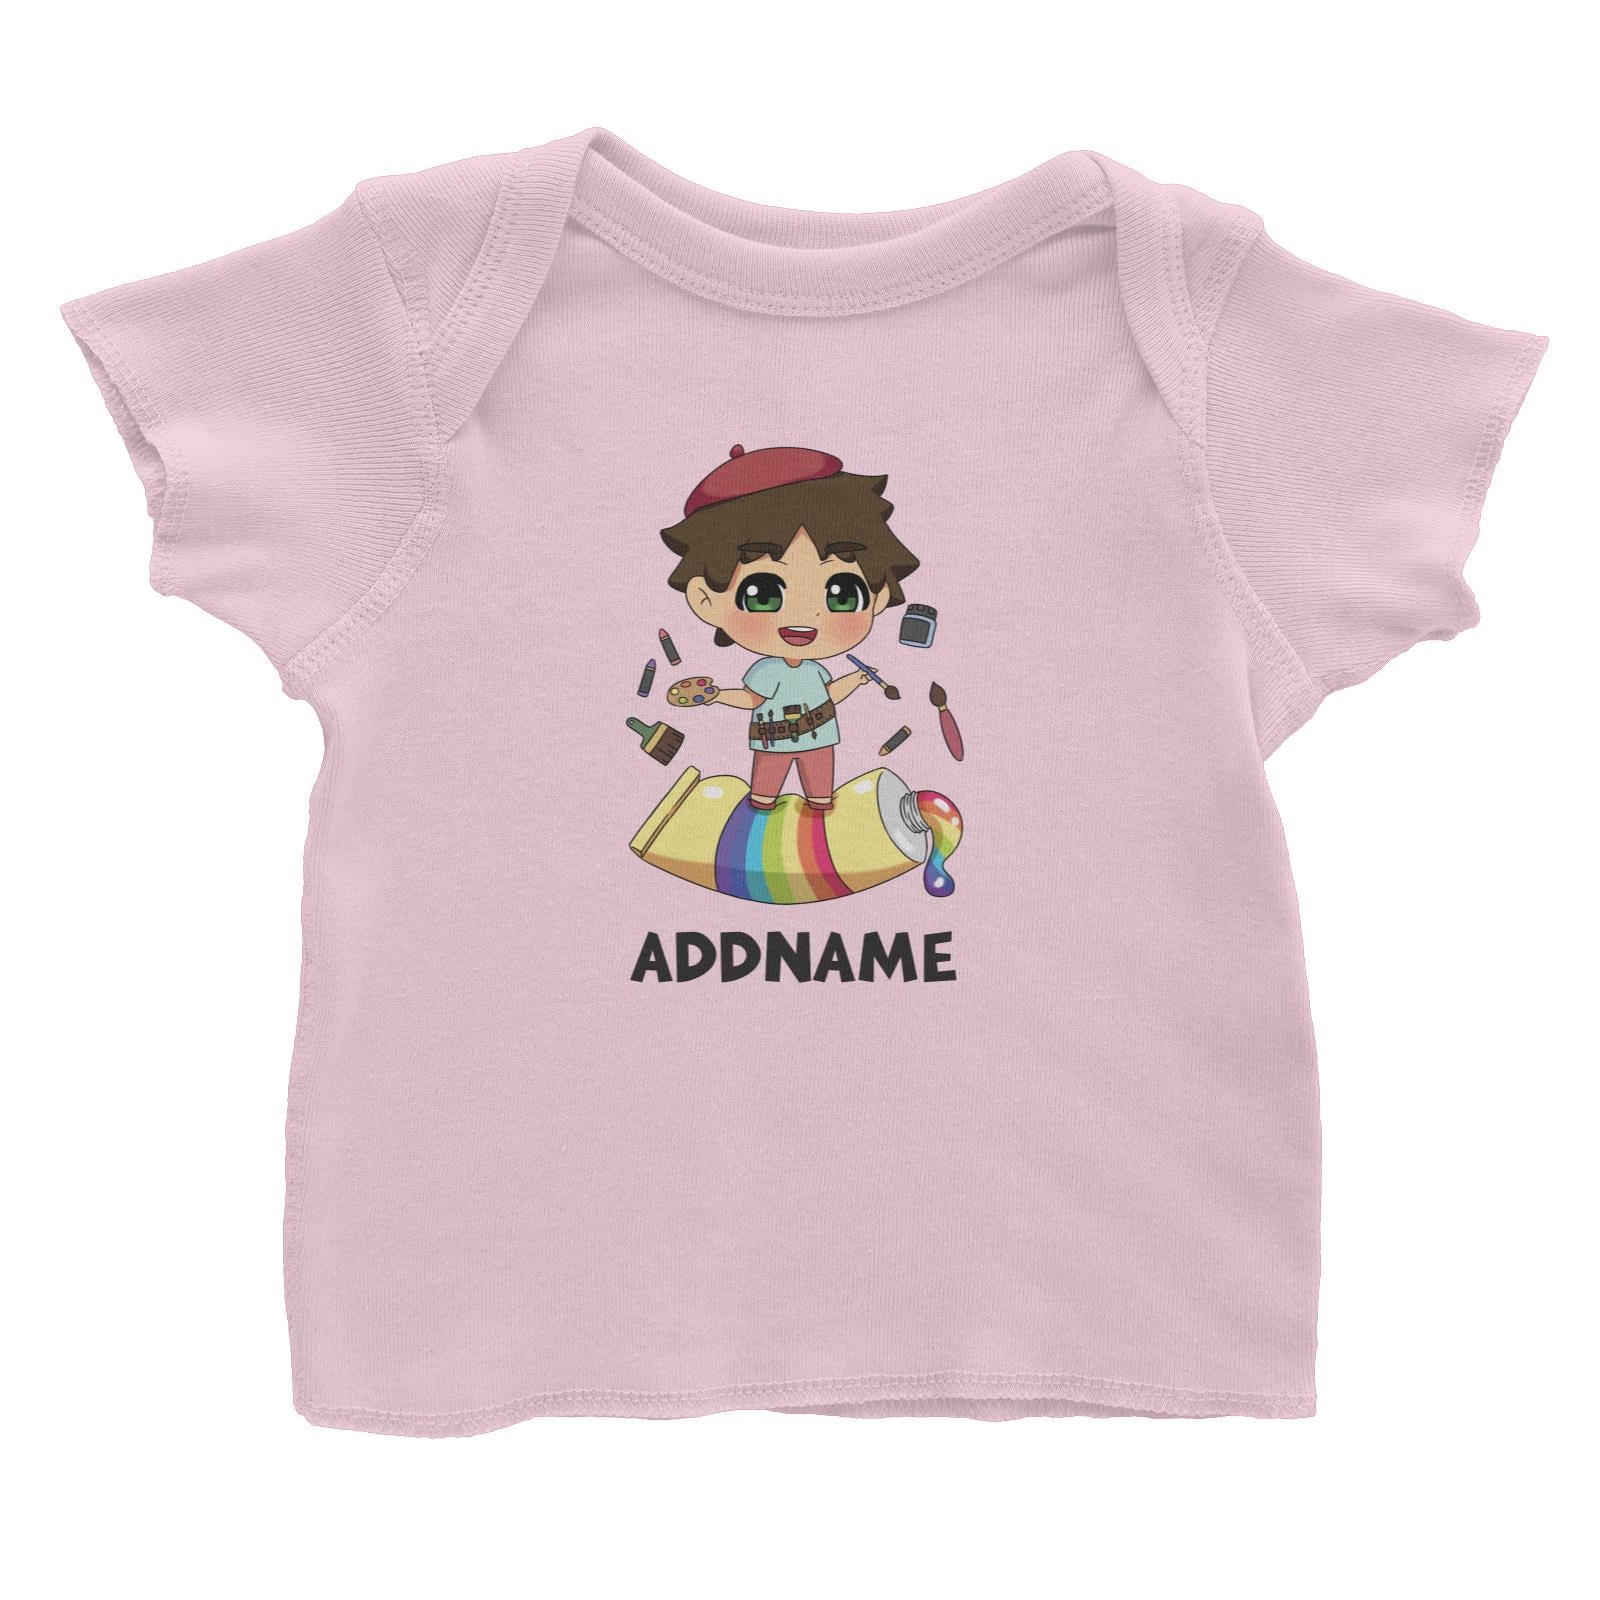 Children's Day Gift Series Artist Little Boy Addname Baby T-Shirt